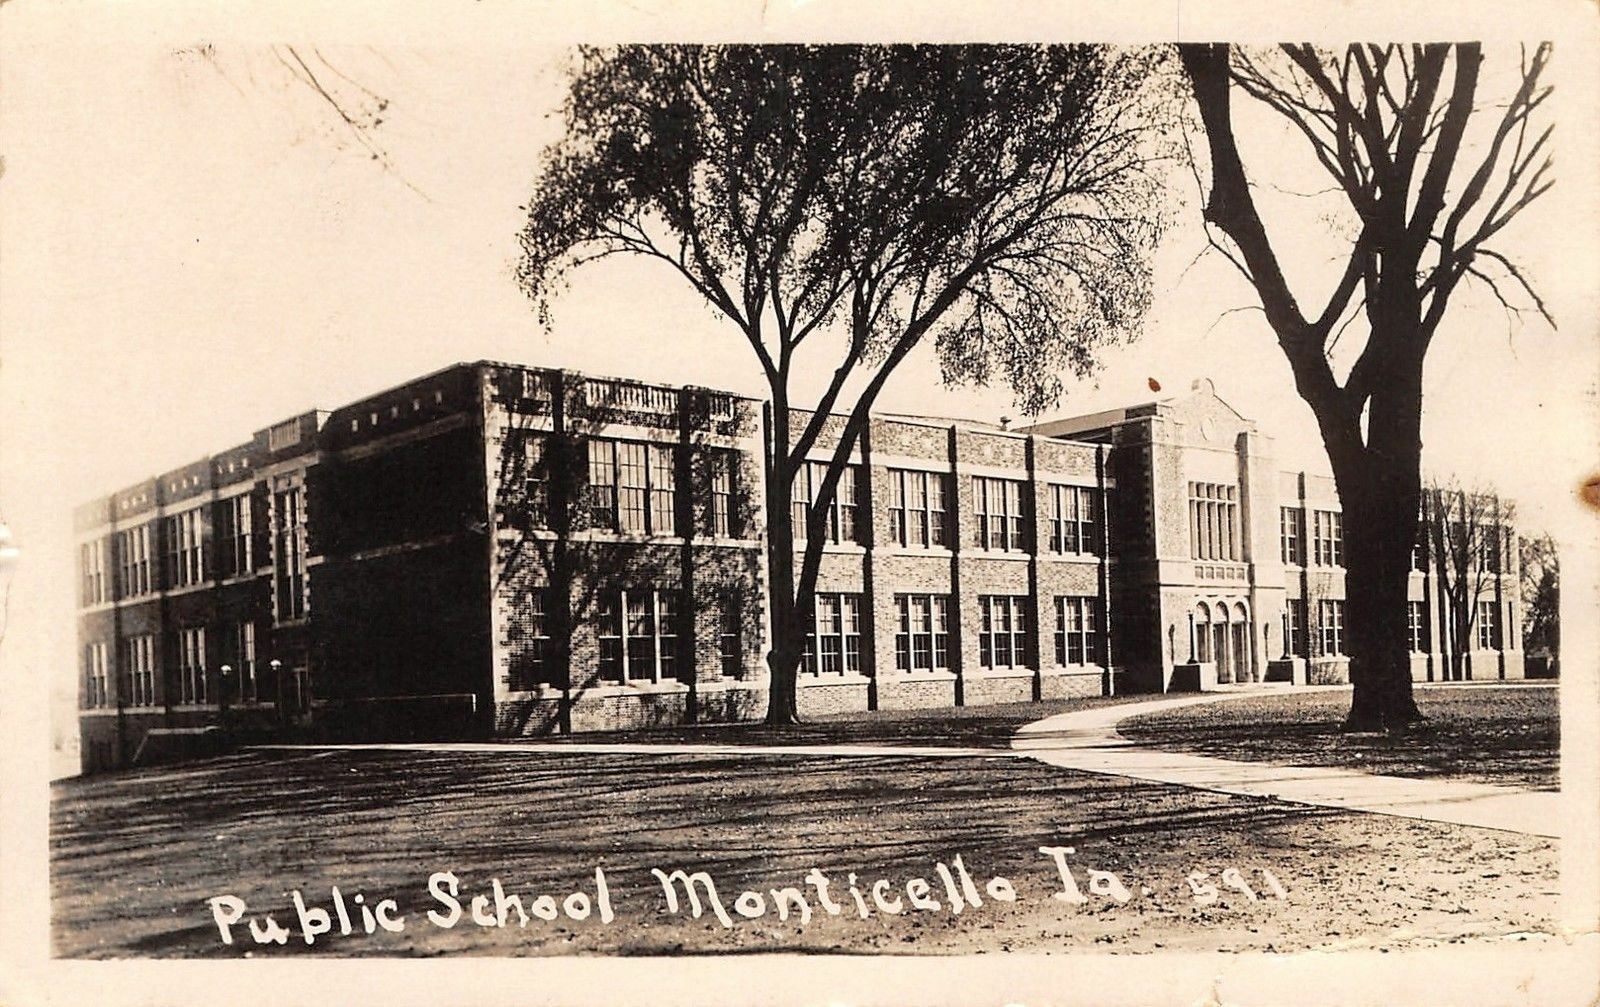 Public School, Monticello, Iowa